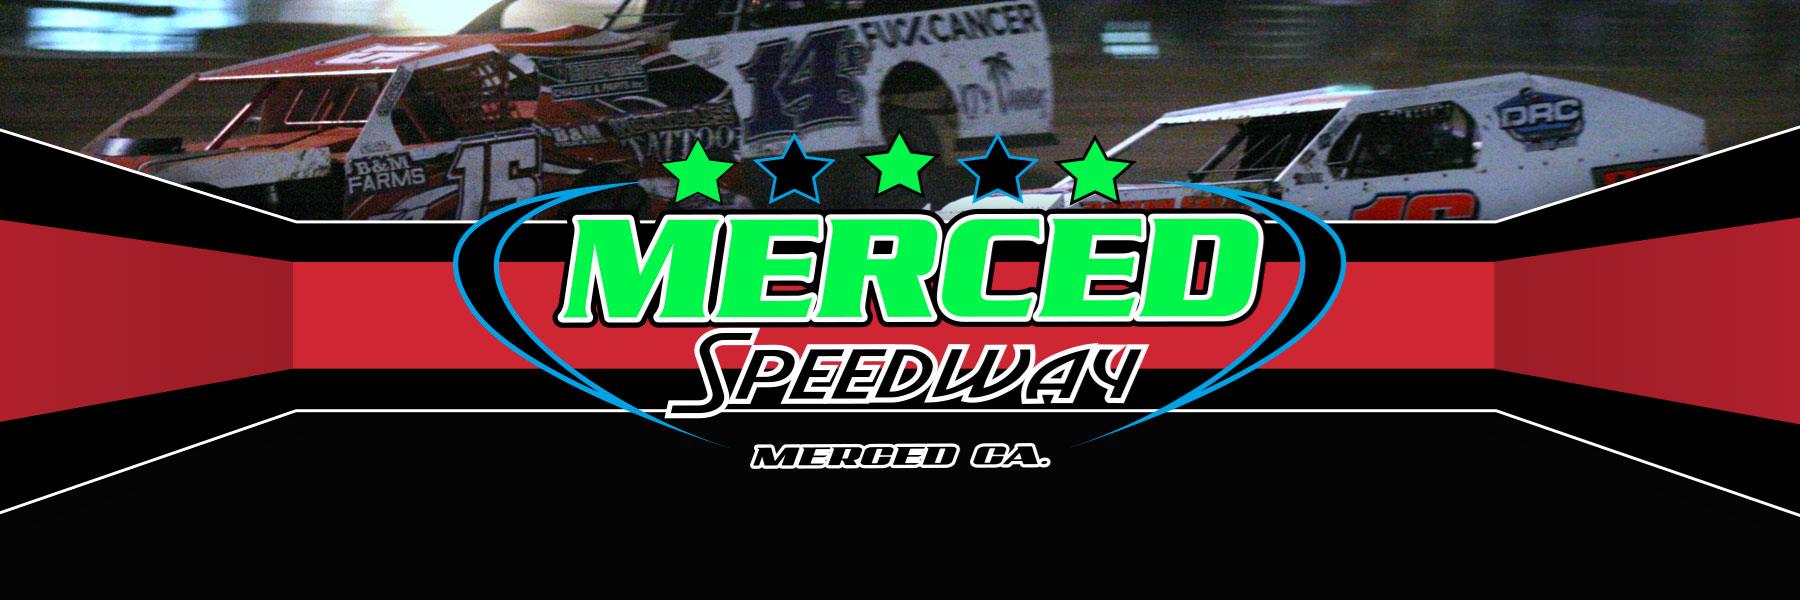 3/6/2020 - Merced Speedway